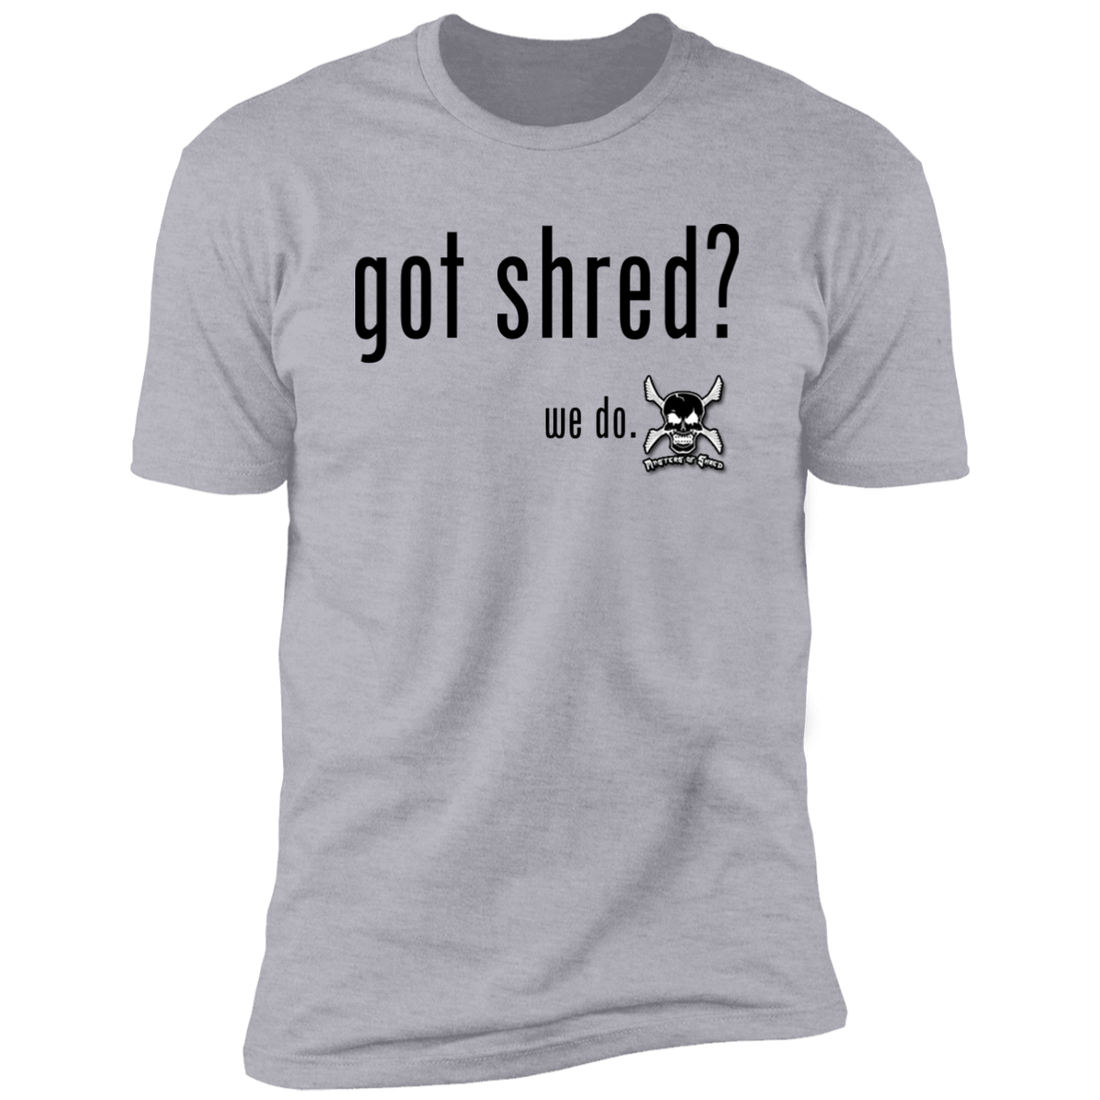 Got Shred?